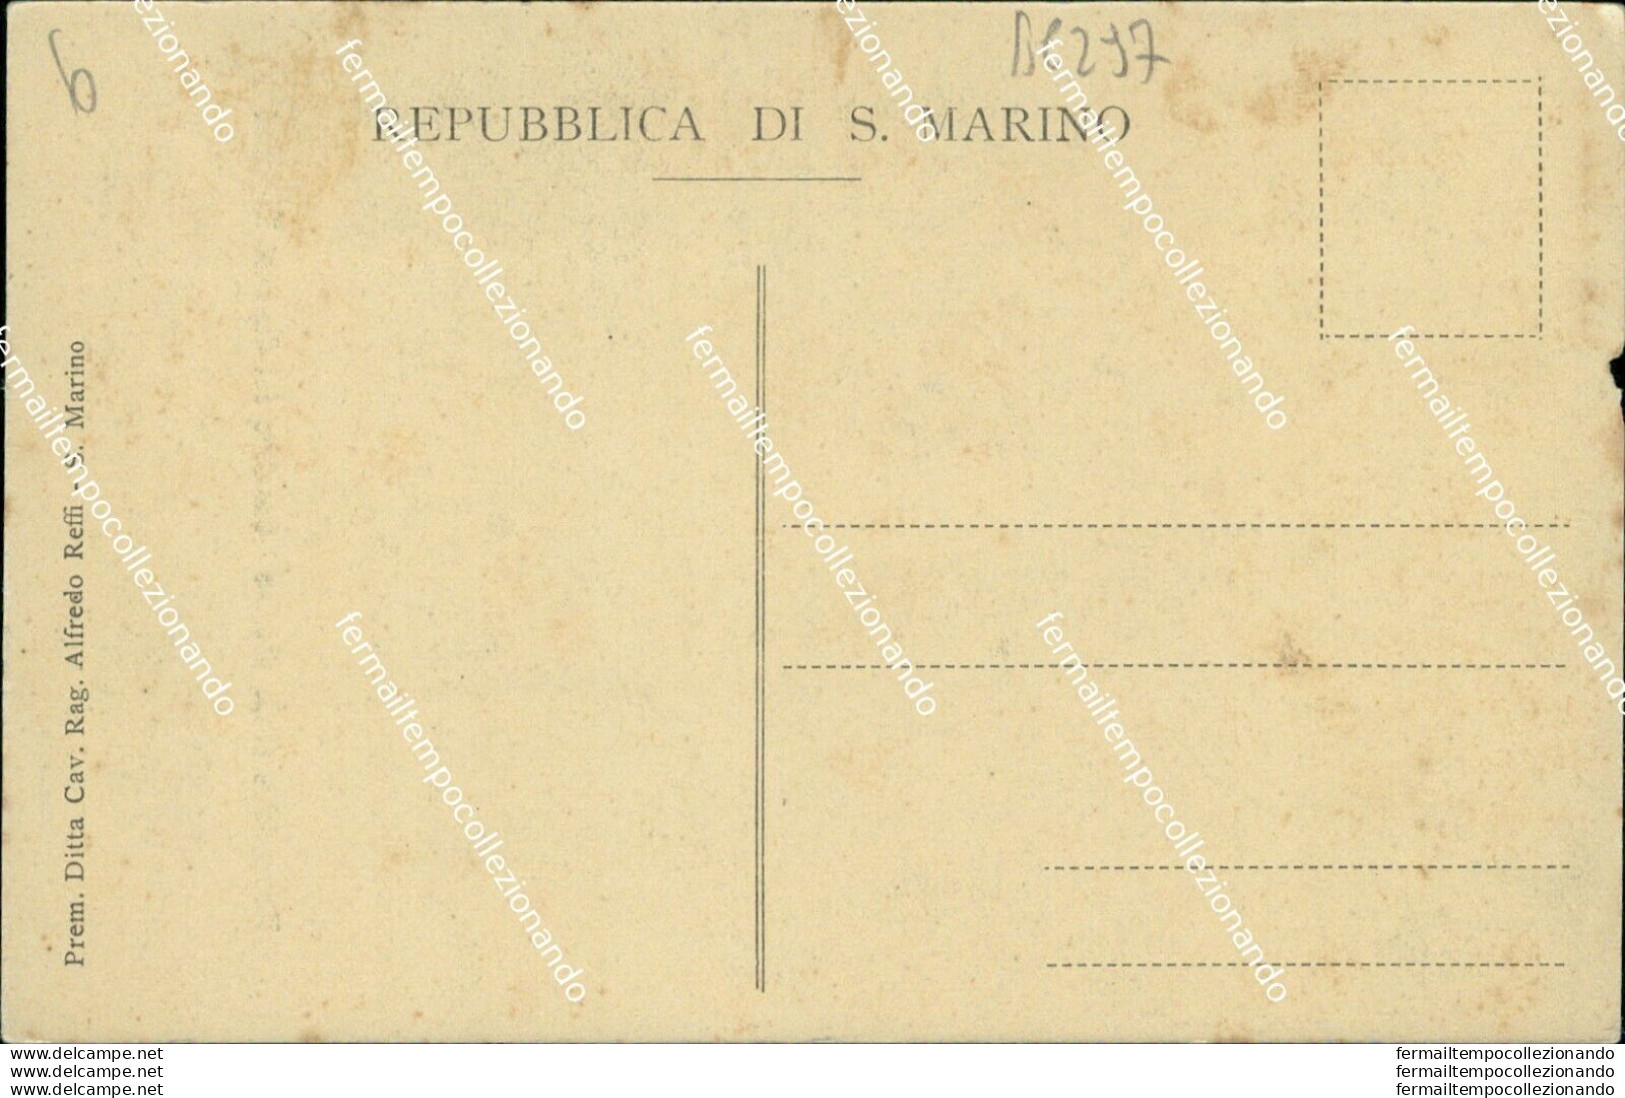 Bc297 Cartolina Repubblica Di San Marino Costume Dei Capitani Reggenti - Saint-Marin